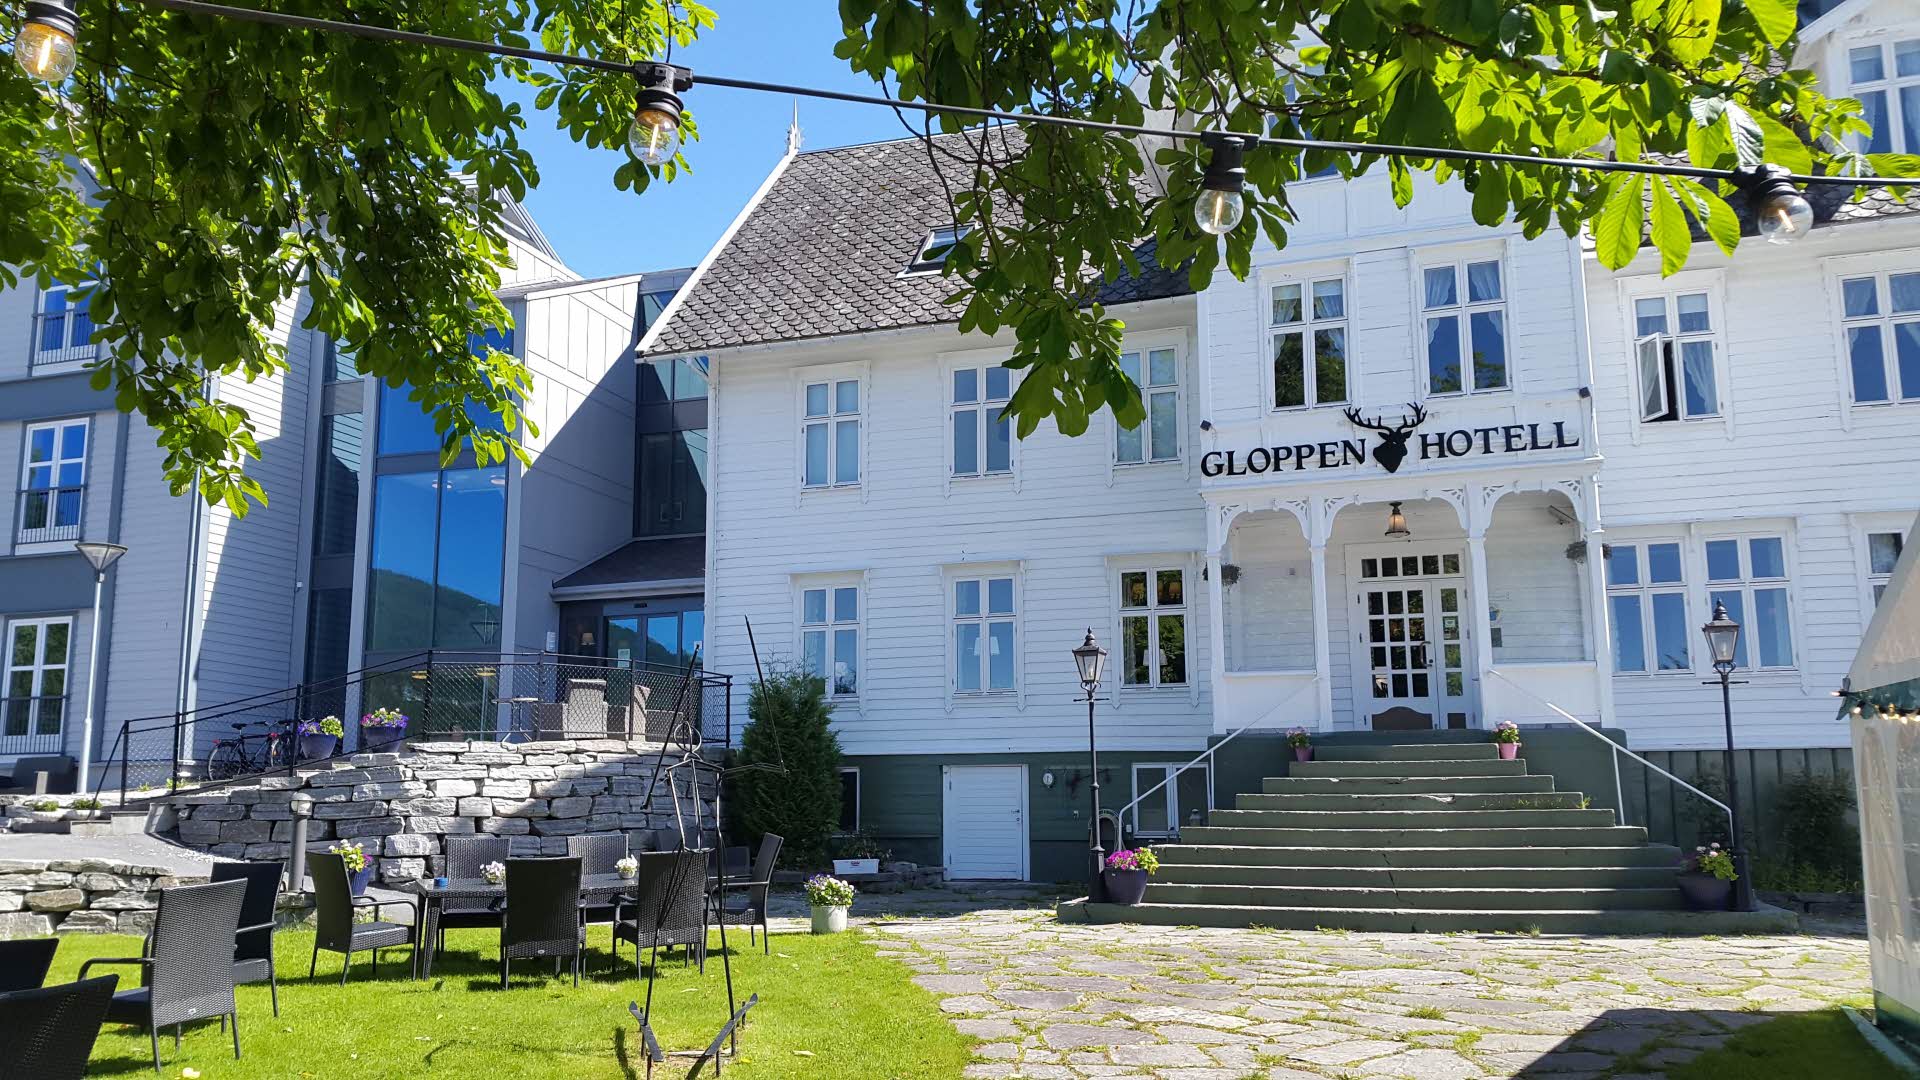 Photo extérieure de l’hôtel Gloppen un jour d’été avec des chaises dans le jardin et des feuilles vertes comme cadre.